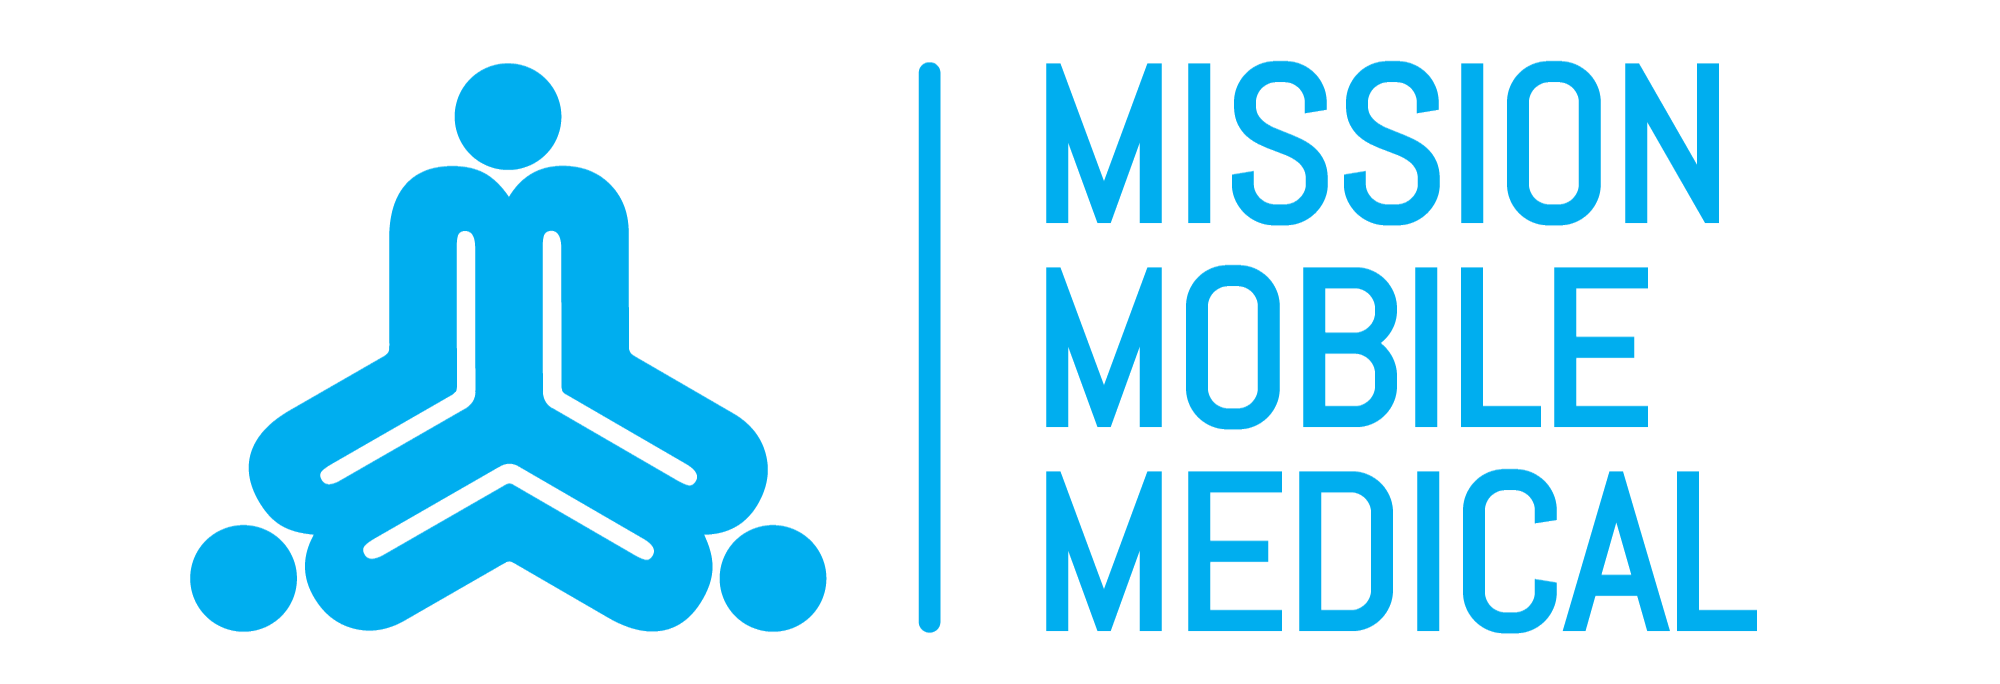 Mission Mobile Medical